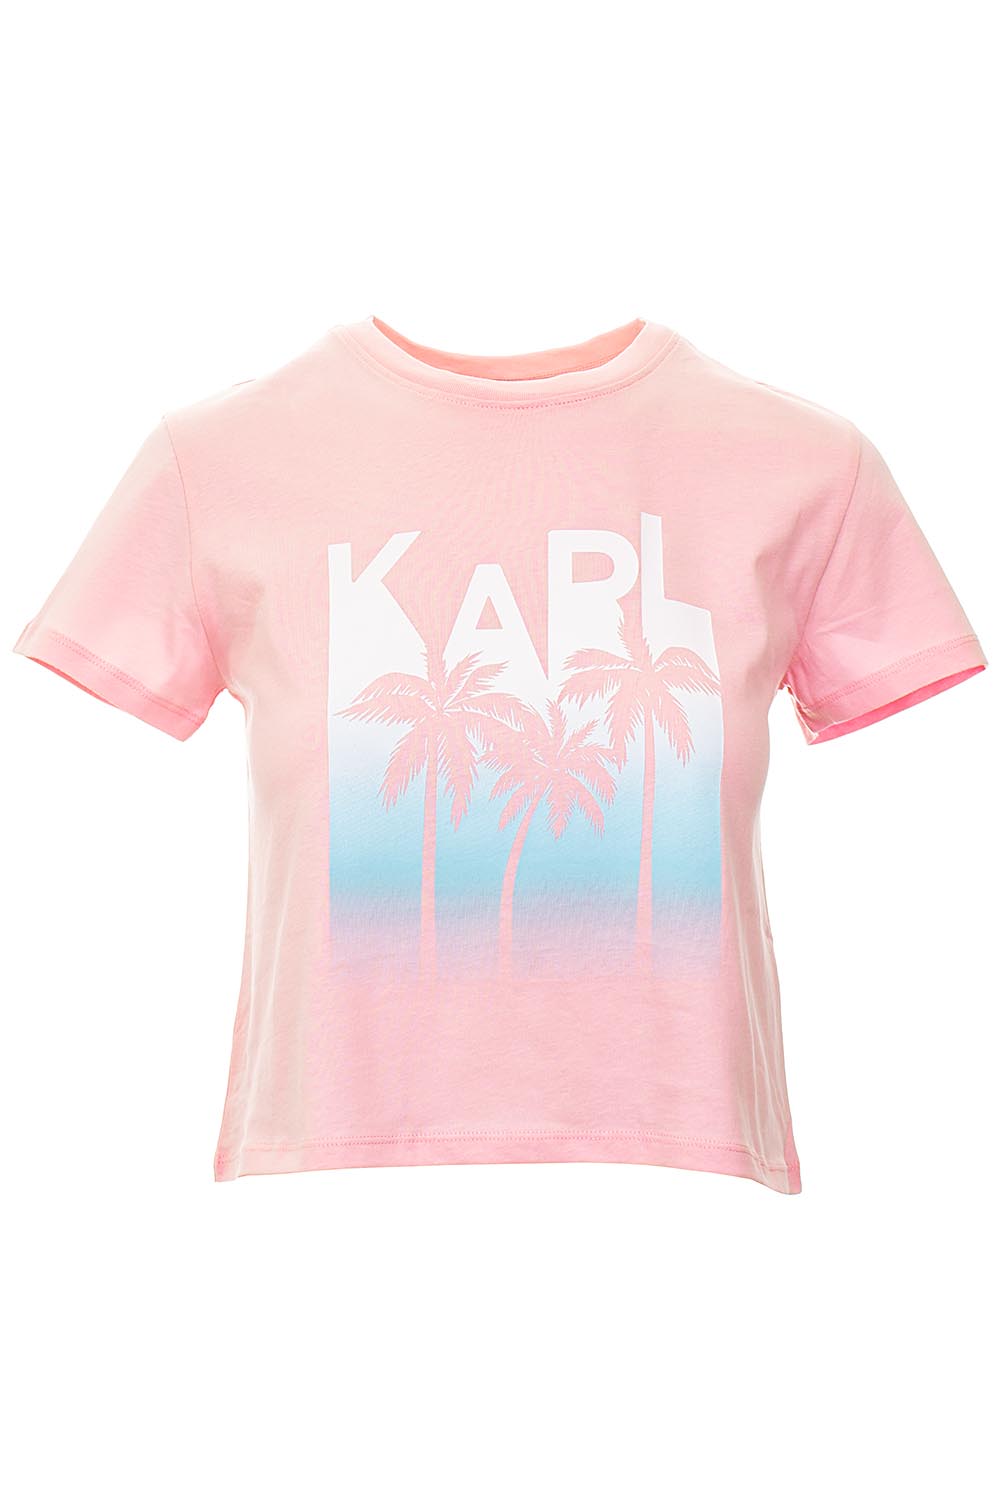 Karl Lagerfeld dámské tričko Crop Top růžové Velikost: M